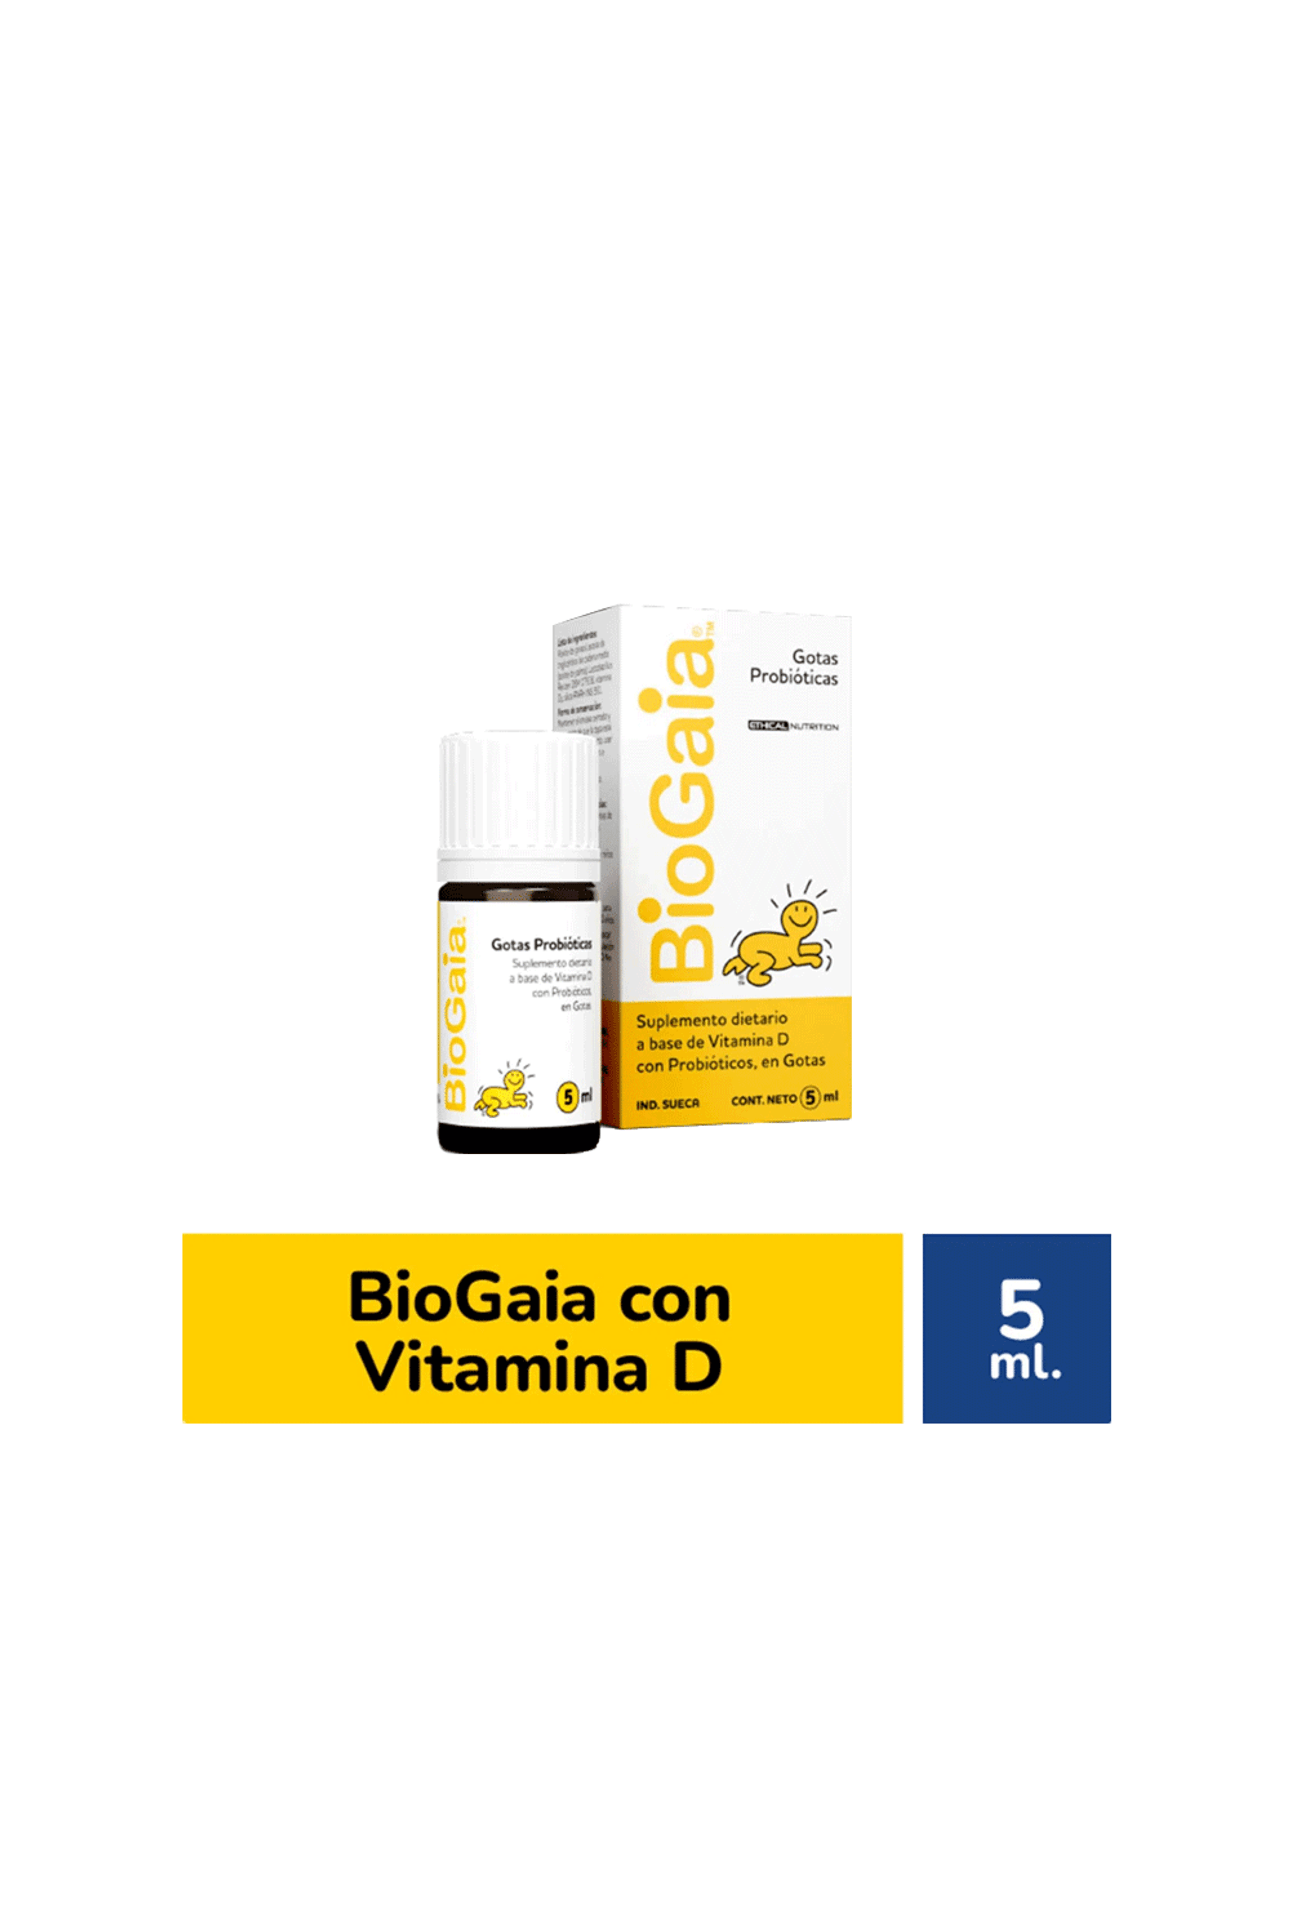 Biogaia - Lactobacillus Reuteri Protectis Gotas 5 Ml